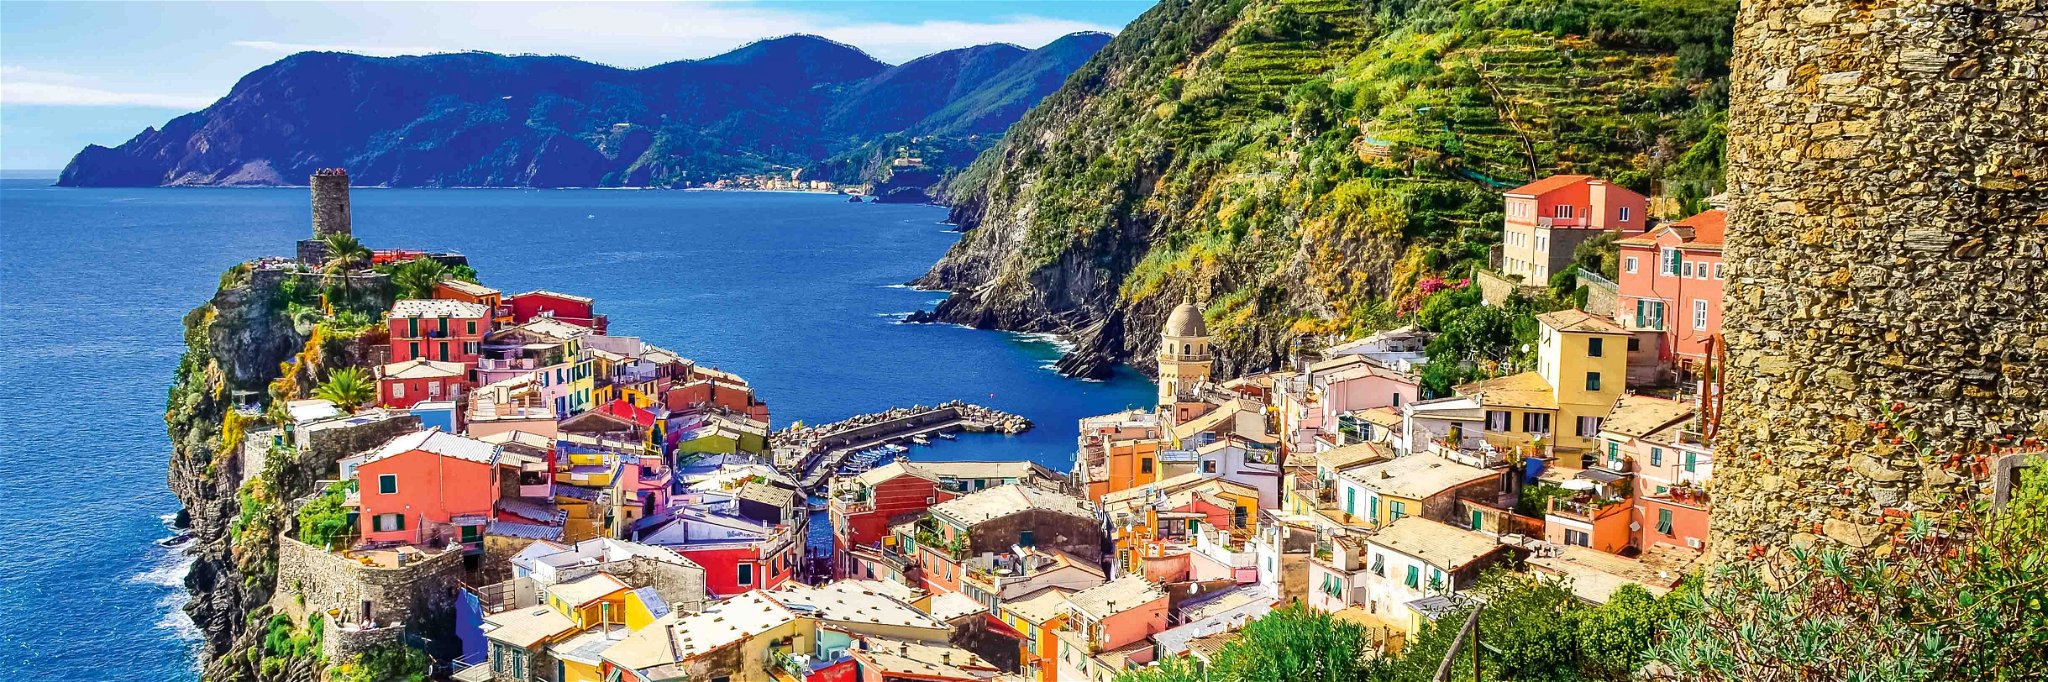 Vernazza gehört zu den Ortschaften der Cinque Terre. An den steilen Hängen findet Weinbau statt.